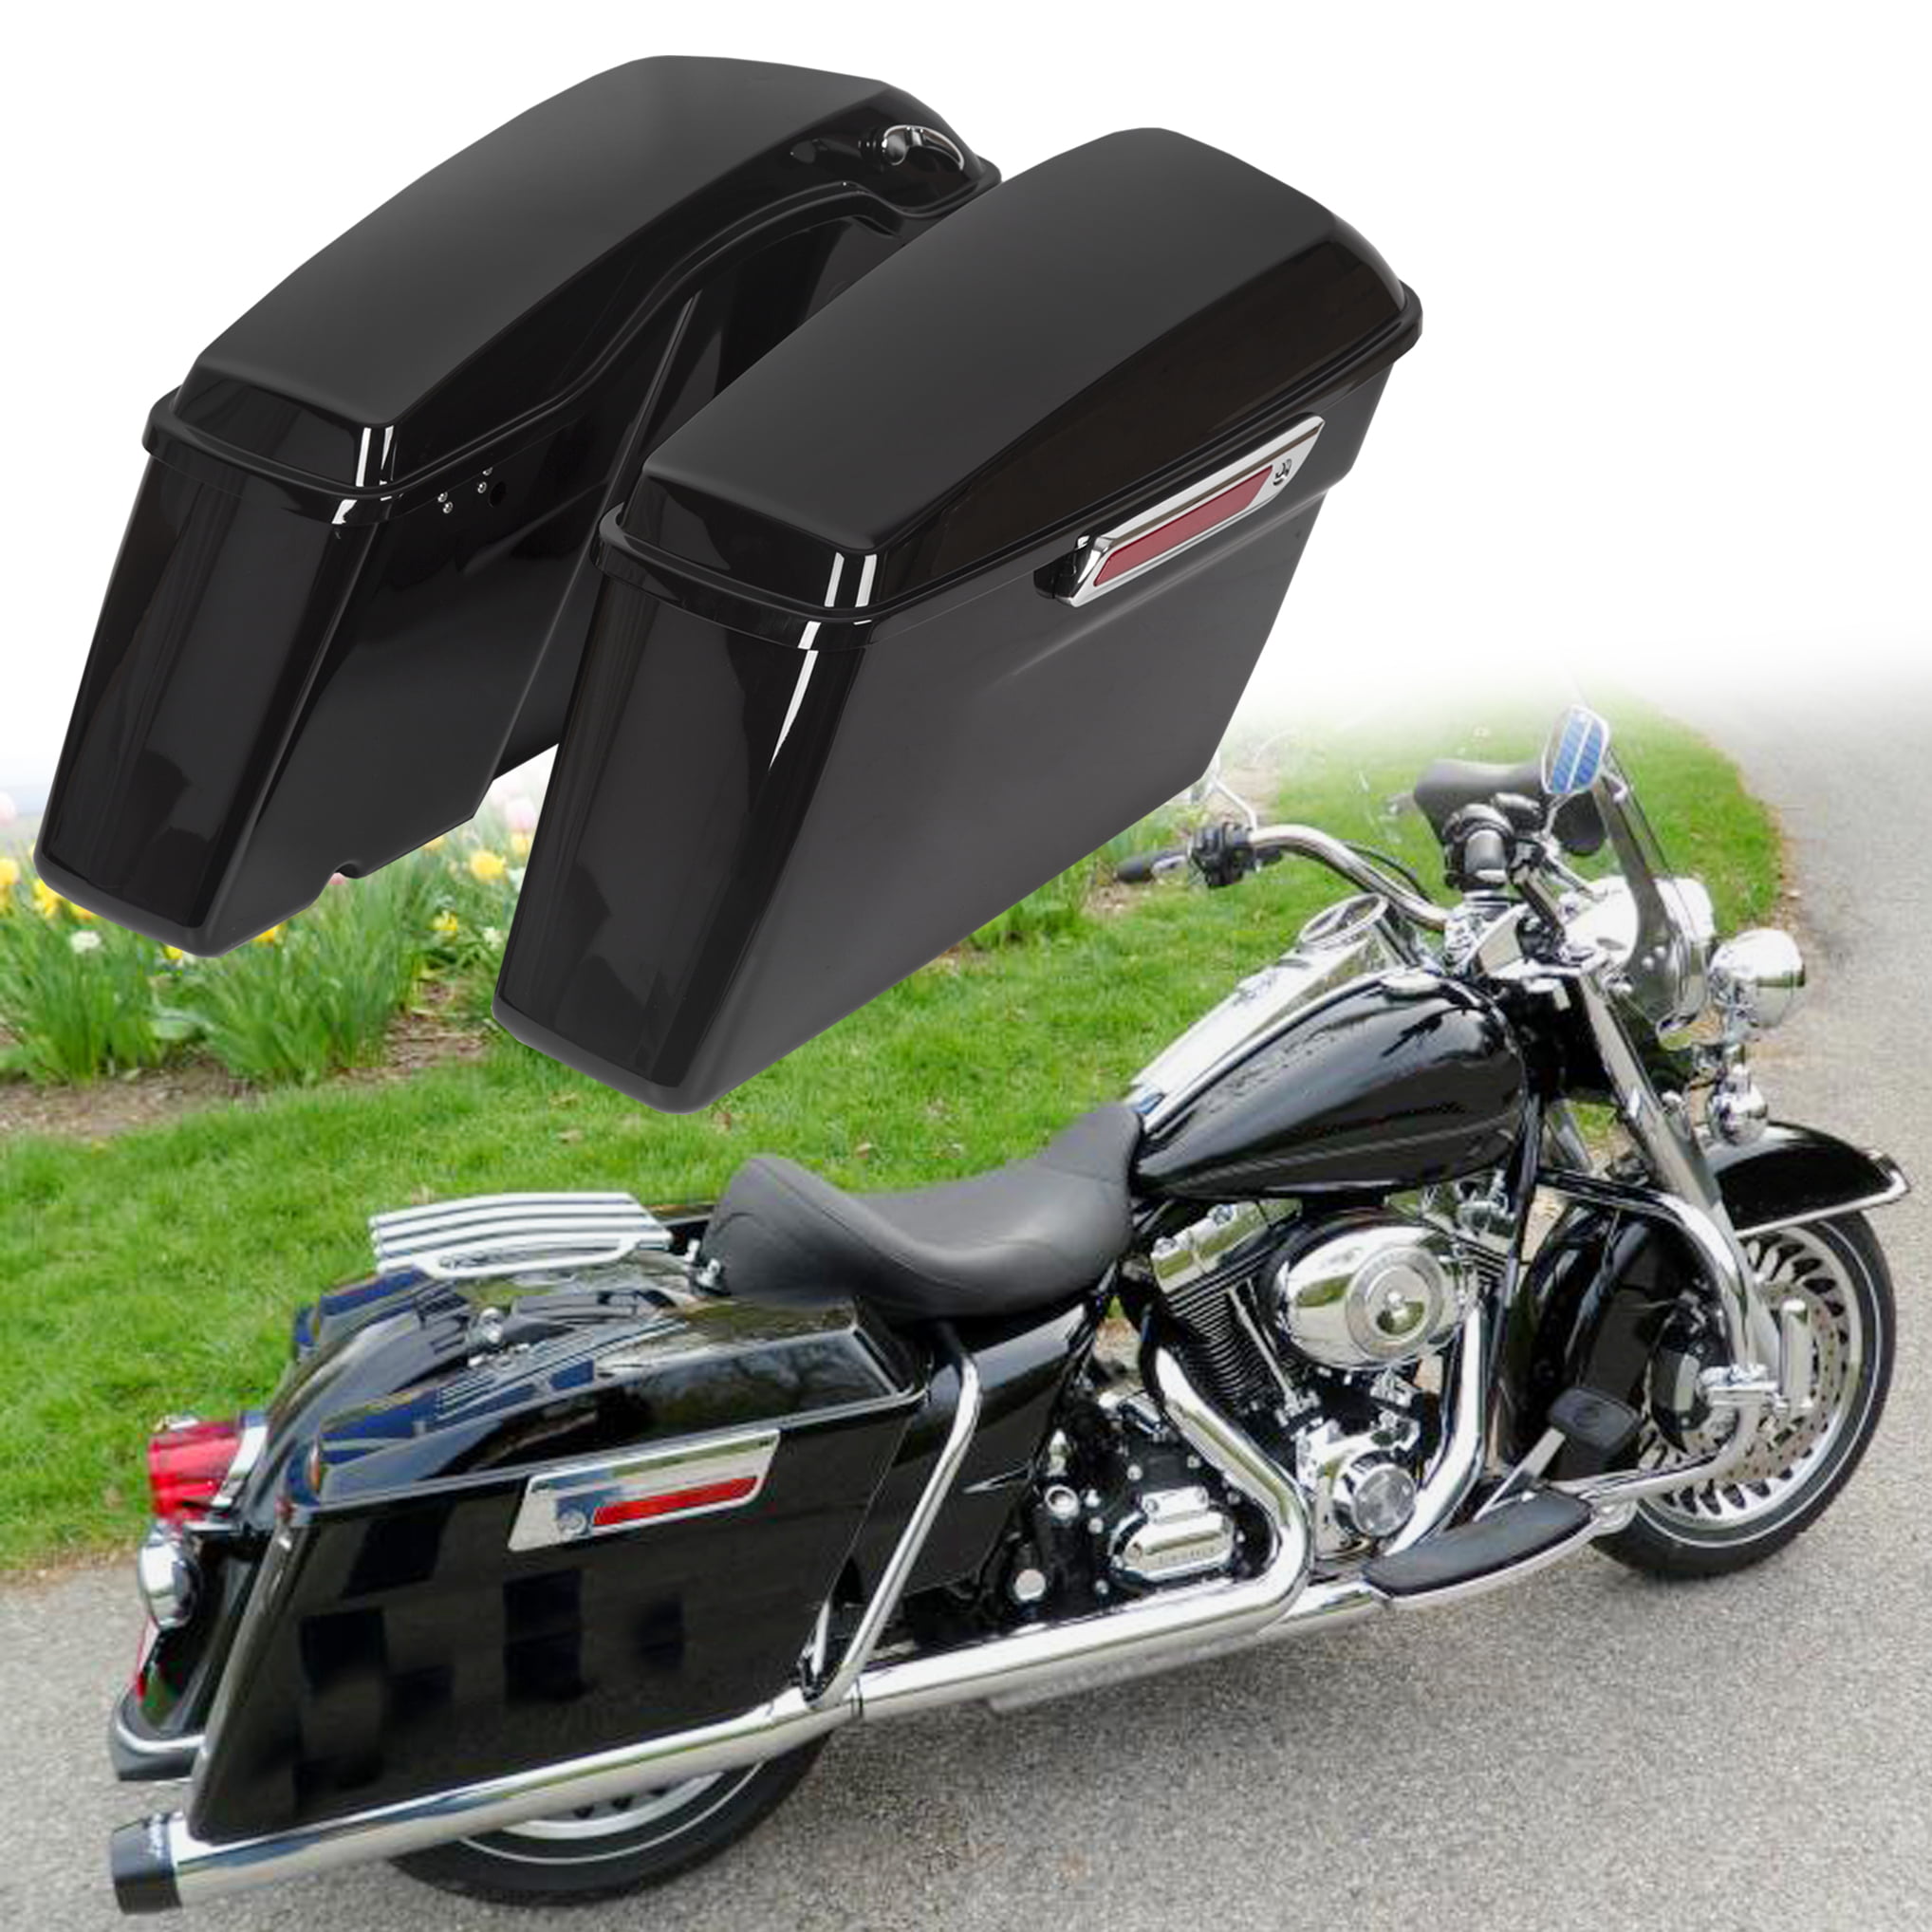 Matte Black ABS Hard Saddle Bags For Harley Davidson Touring Models 2014-2019 18 